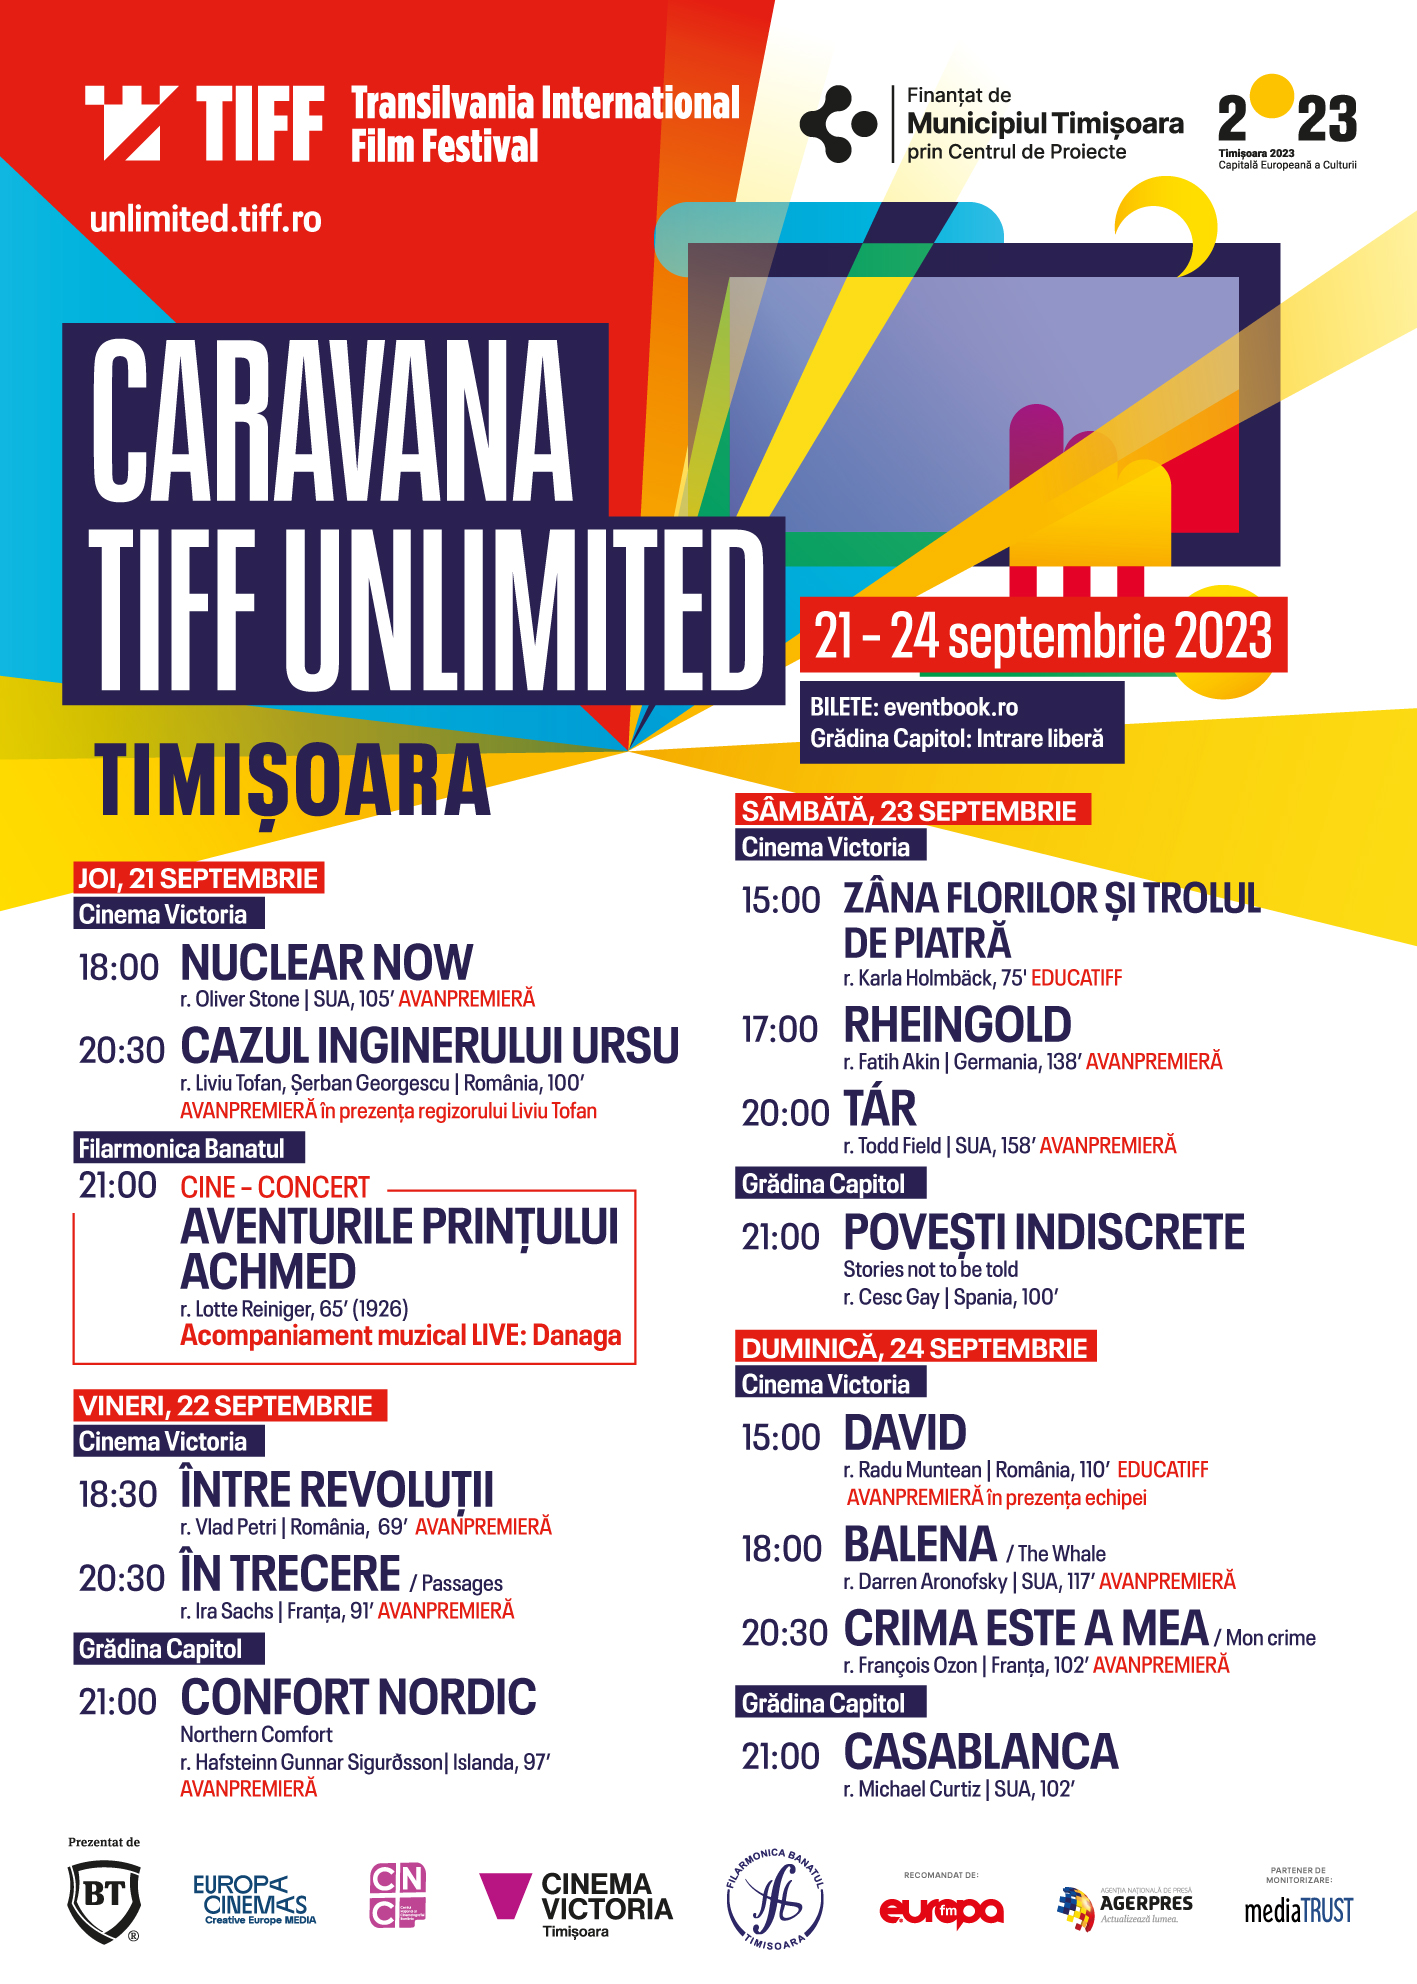 Programul complet și biletele la a 6-a ediție TIFF Oradea sunt disponibile. Avanpremiere, cine-concerte și proiecții-eveniment, în ultimul weekend din septembrie